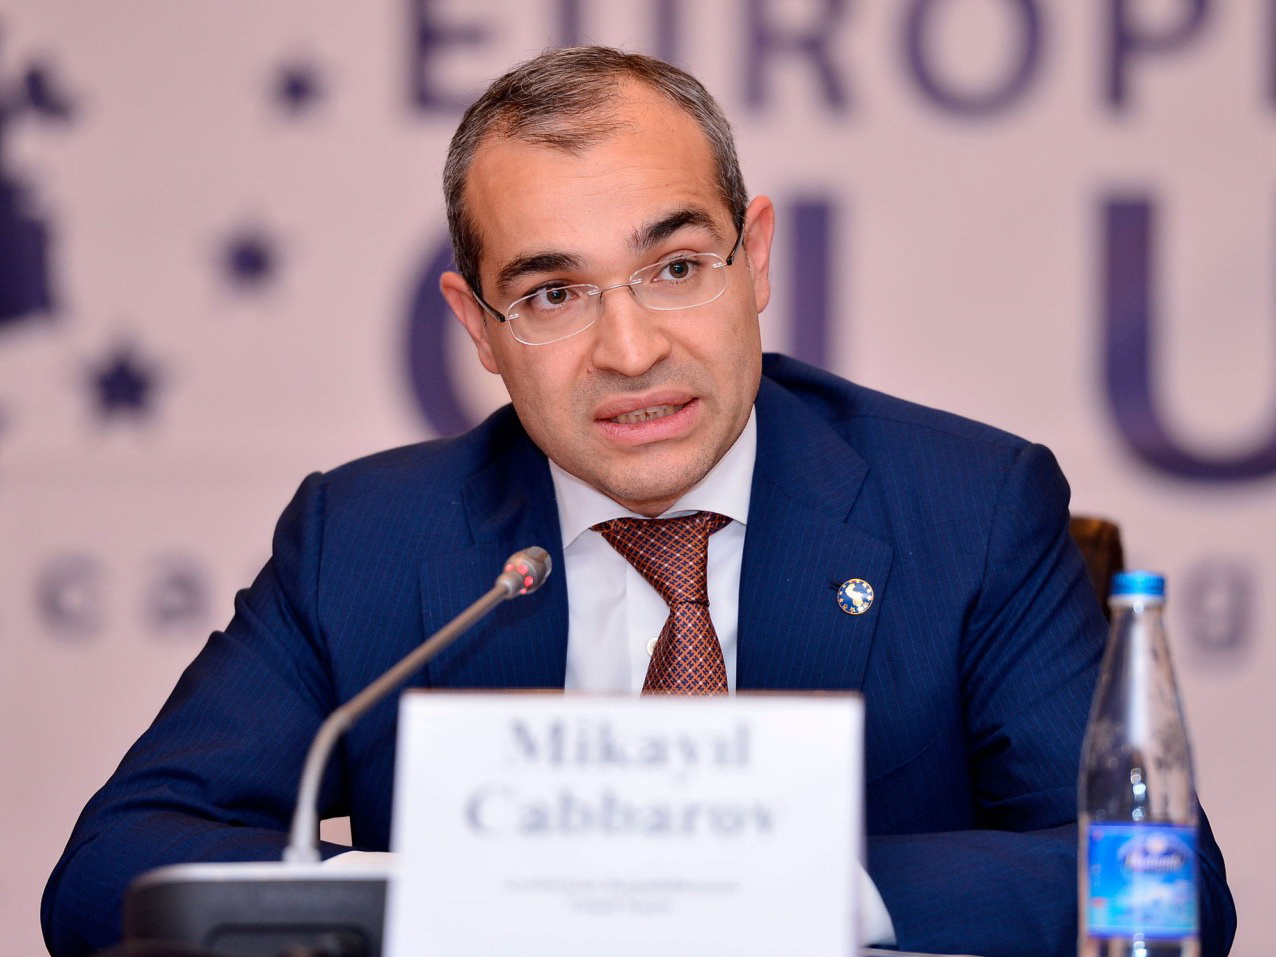 Микаил Джаббаров: Минналогов против политики налоговых выплат за счет нечестной конкуренции и нарушения законодательства